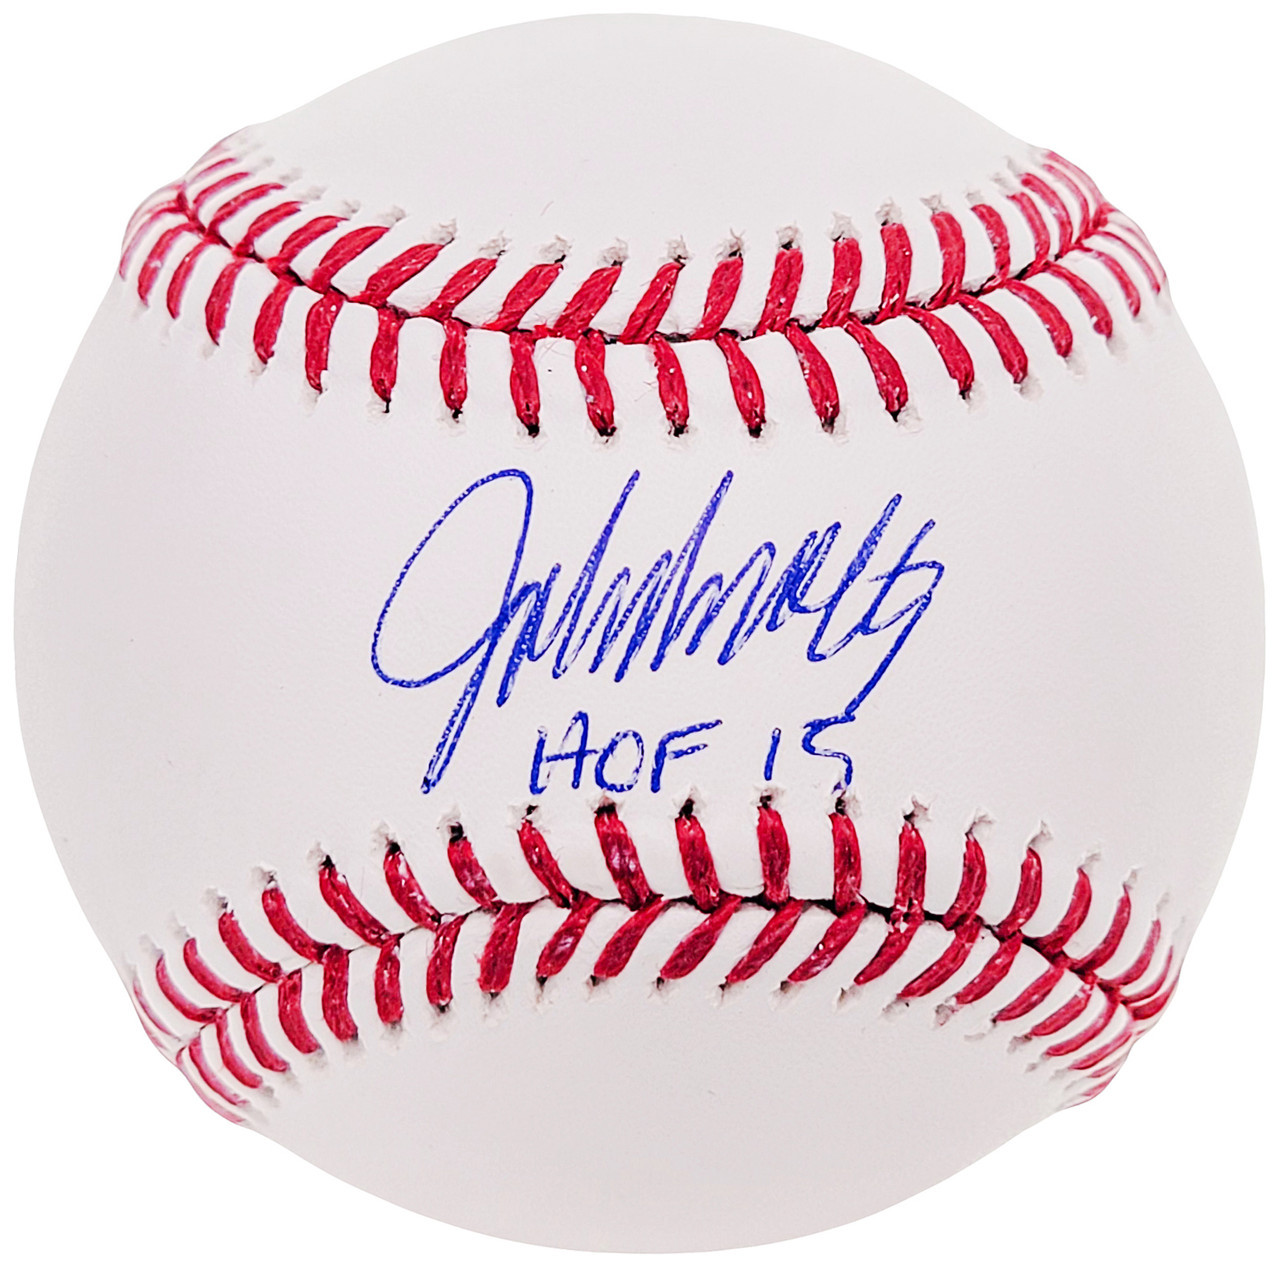 John Smoltz Autographed Baseball Atlanta Braves HOF 15